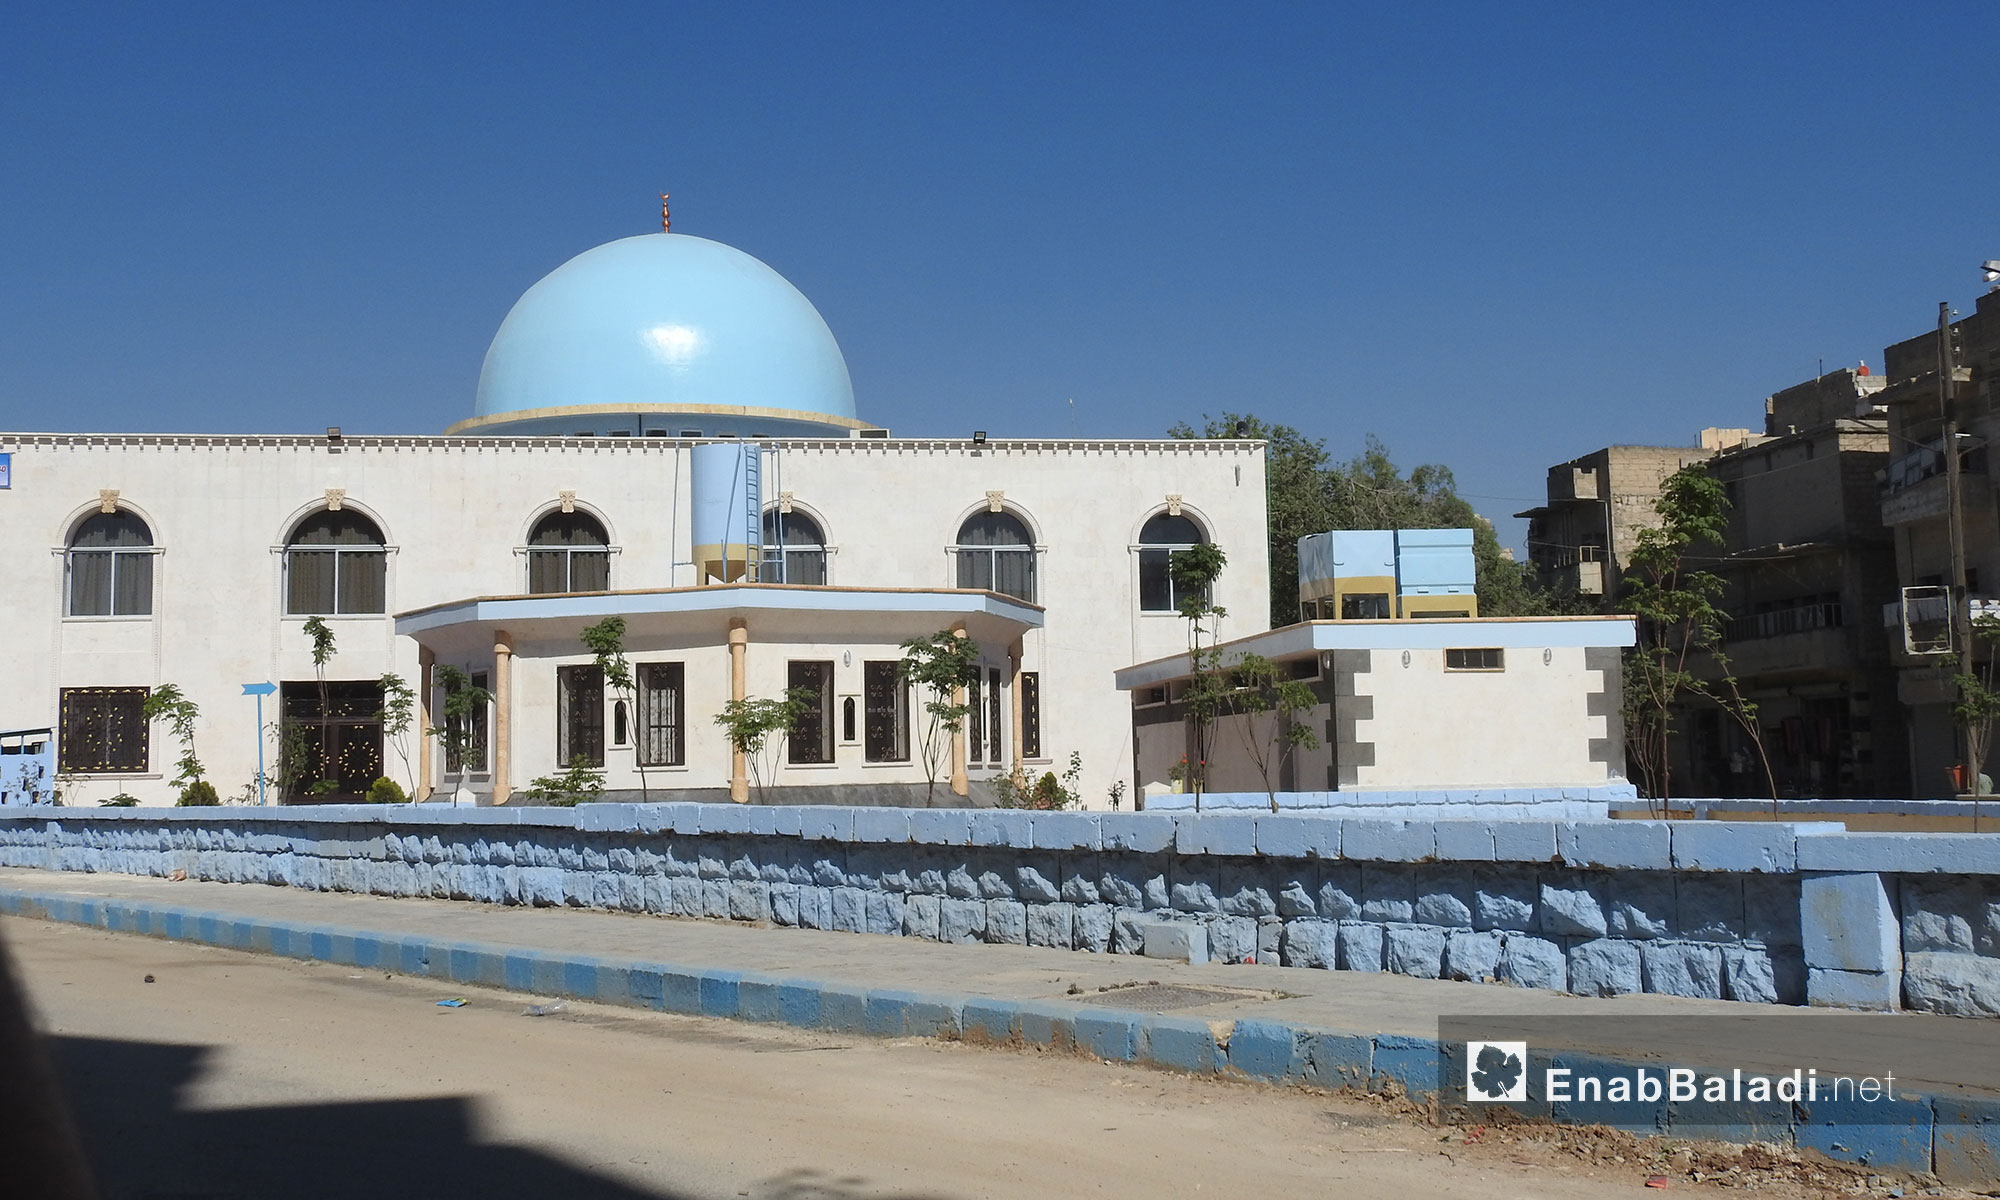 مسجد عمر بن الخطاب بمدينة الباب بعد أن قامت وقف الديانة التركية بترميمه - 29 أيار 2017 (عنب بلدي)